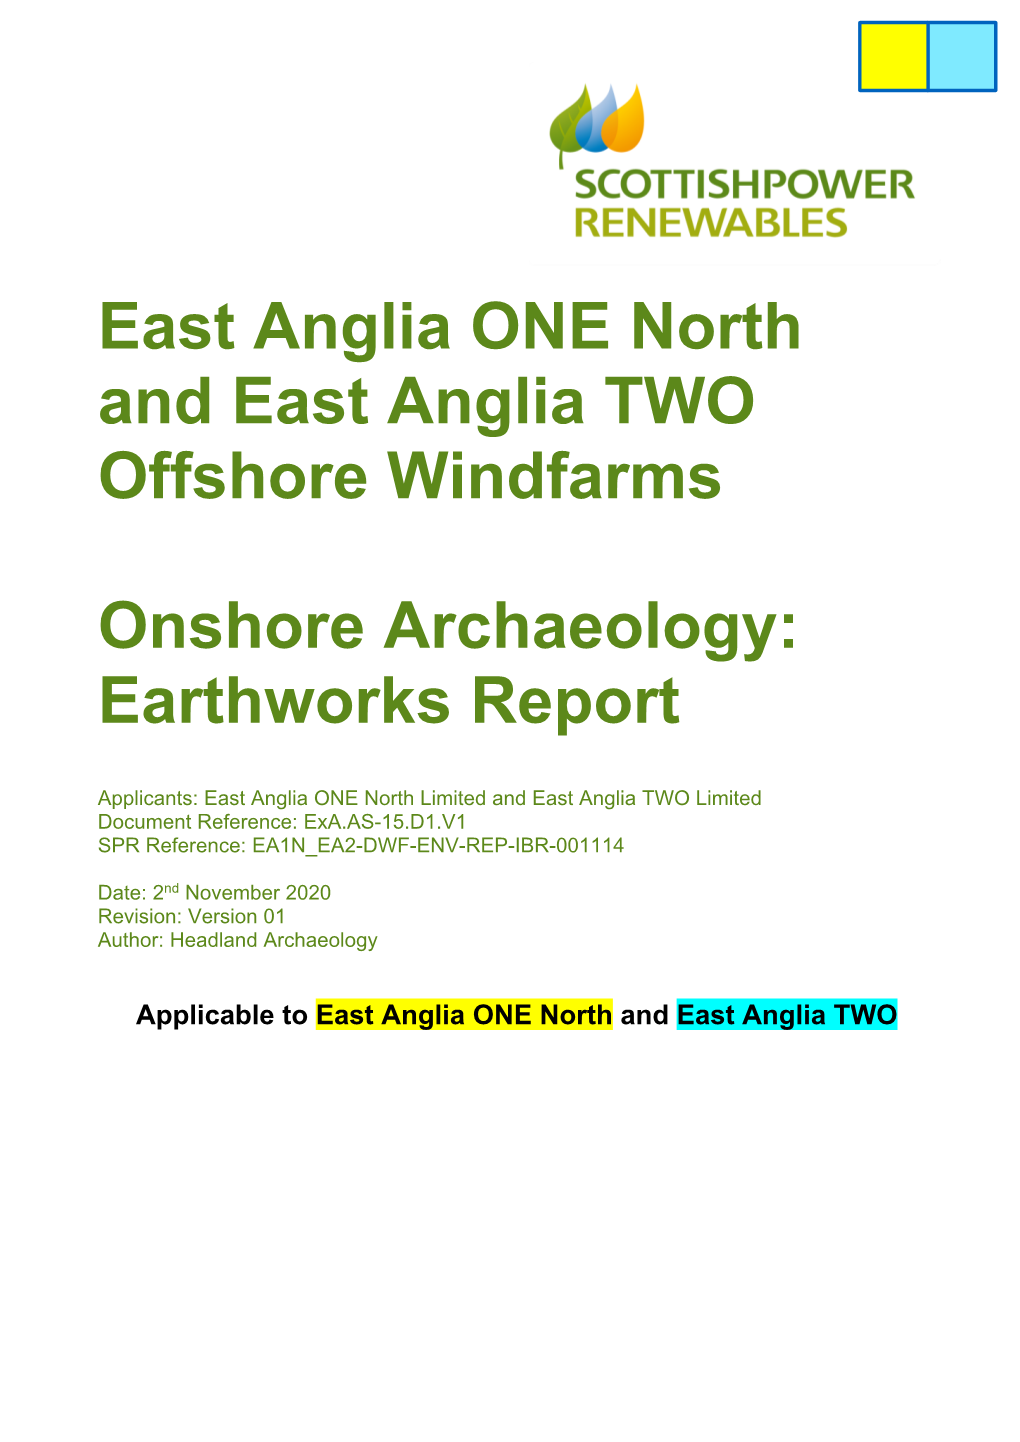 Exa.AS-15.D1.V1 EA1N&EA2 Onshore Archaeology Earthworks Report